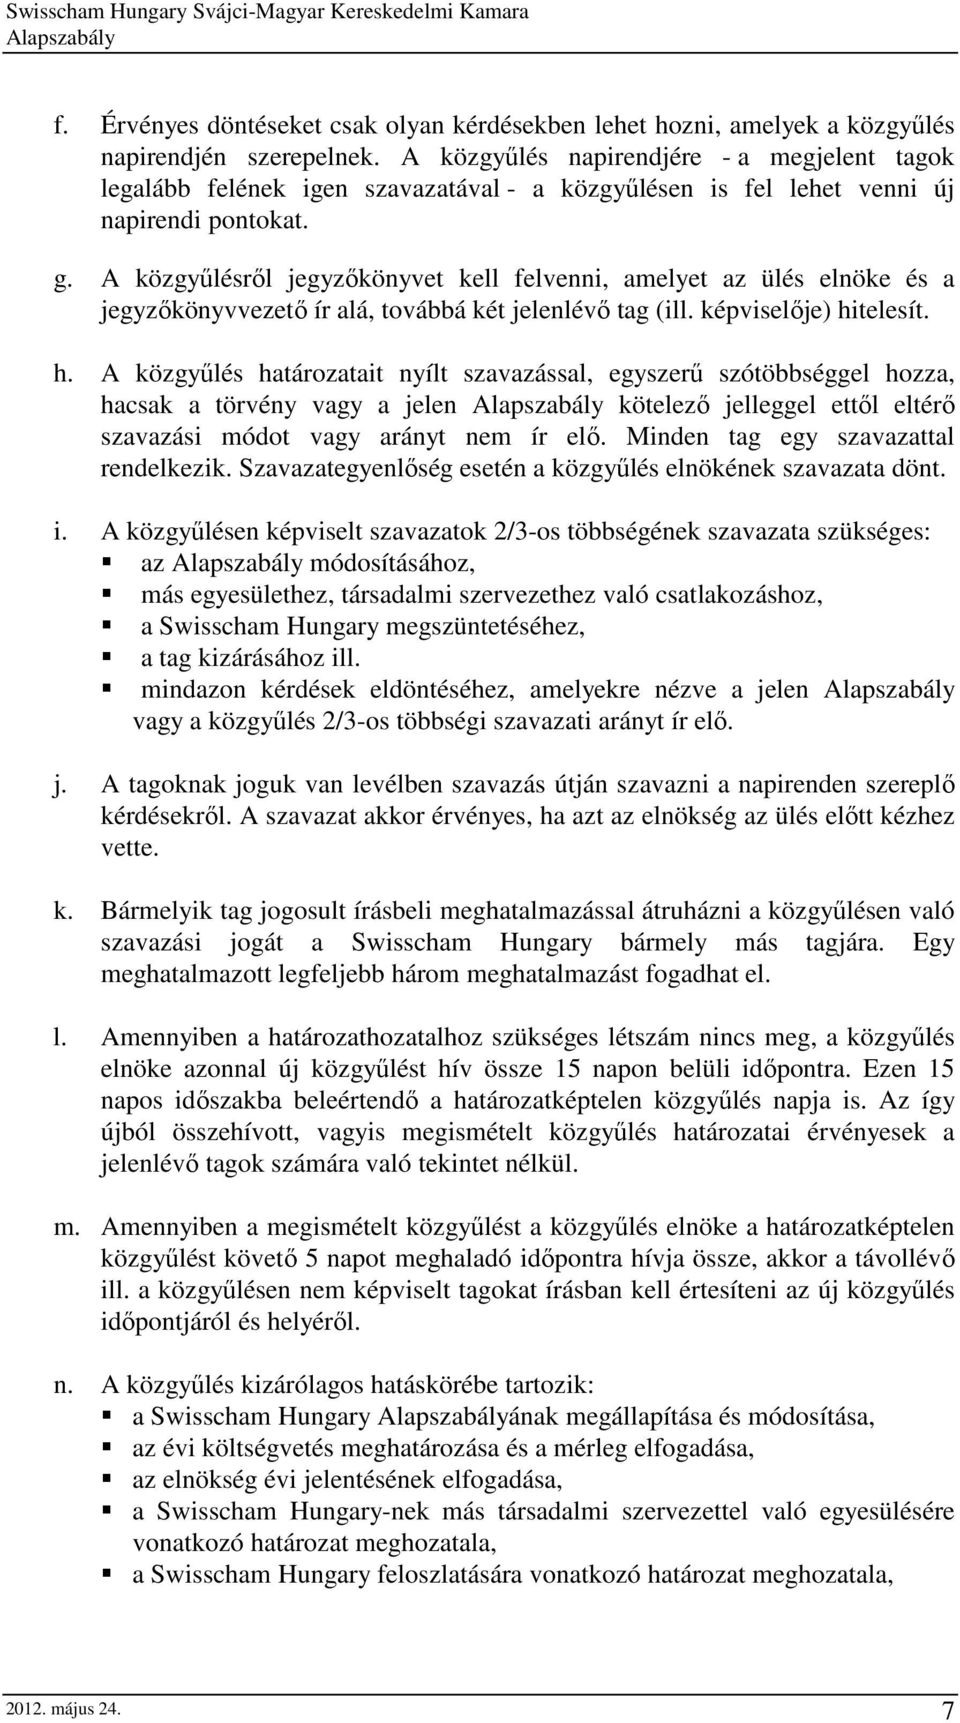 A közgyőlésrıl jegyzıkönyvet kell felvenni, amelyet az ülés elnöke és a jegyzıkönyvvezetı ír alá, továbbá két jelenlévı tag (ill. képviselıje) hi